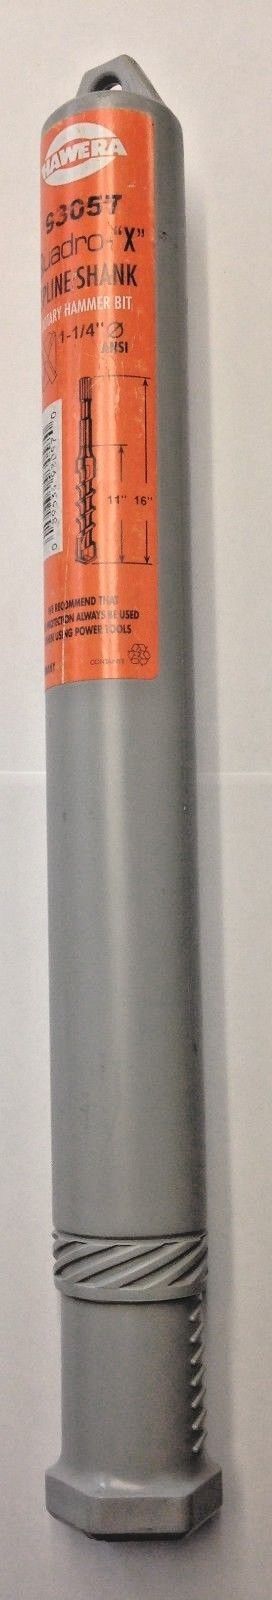 Hawera 93057 Quadro X 1-1/4" x 11" x 16" Spline Shank Rotary Hammer Bit Germany